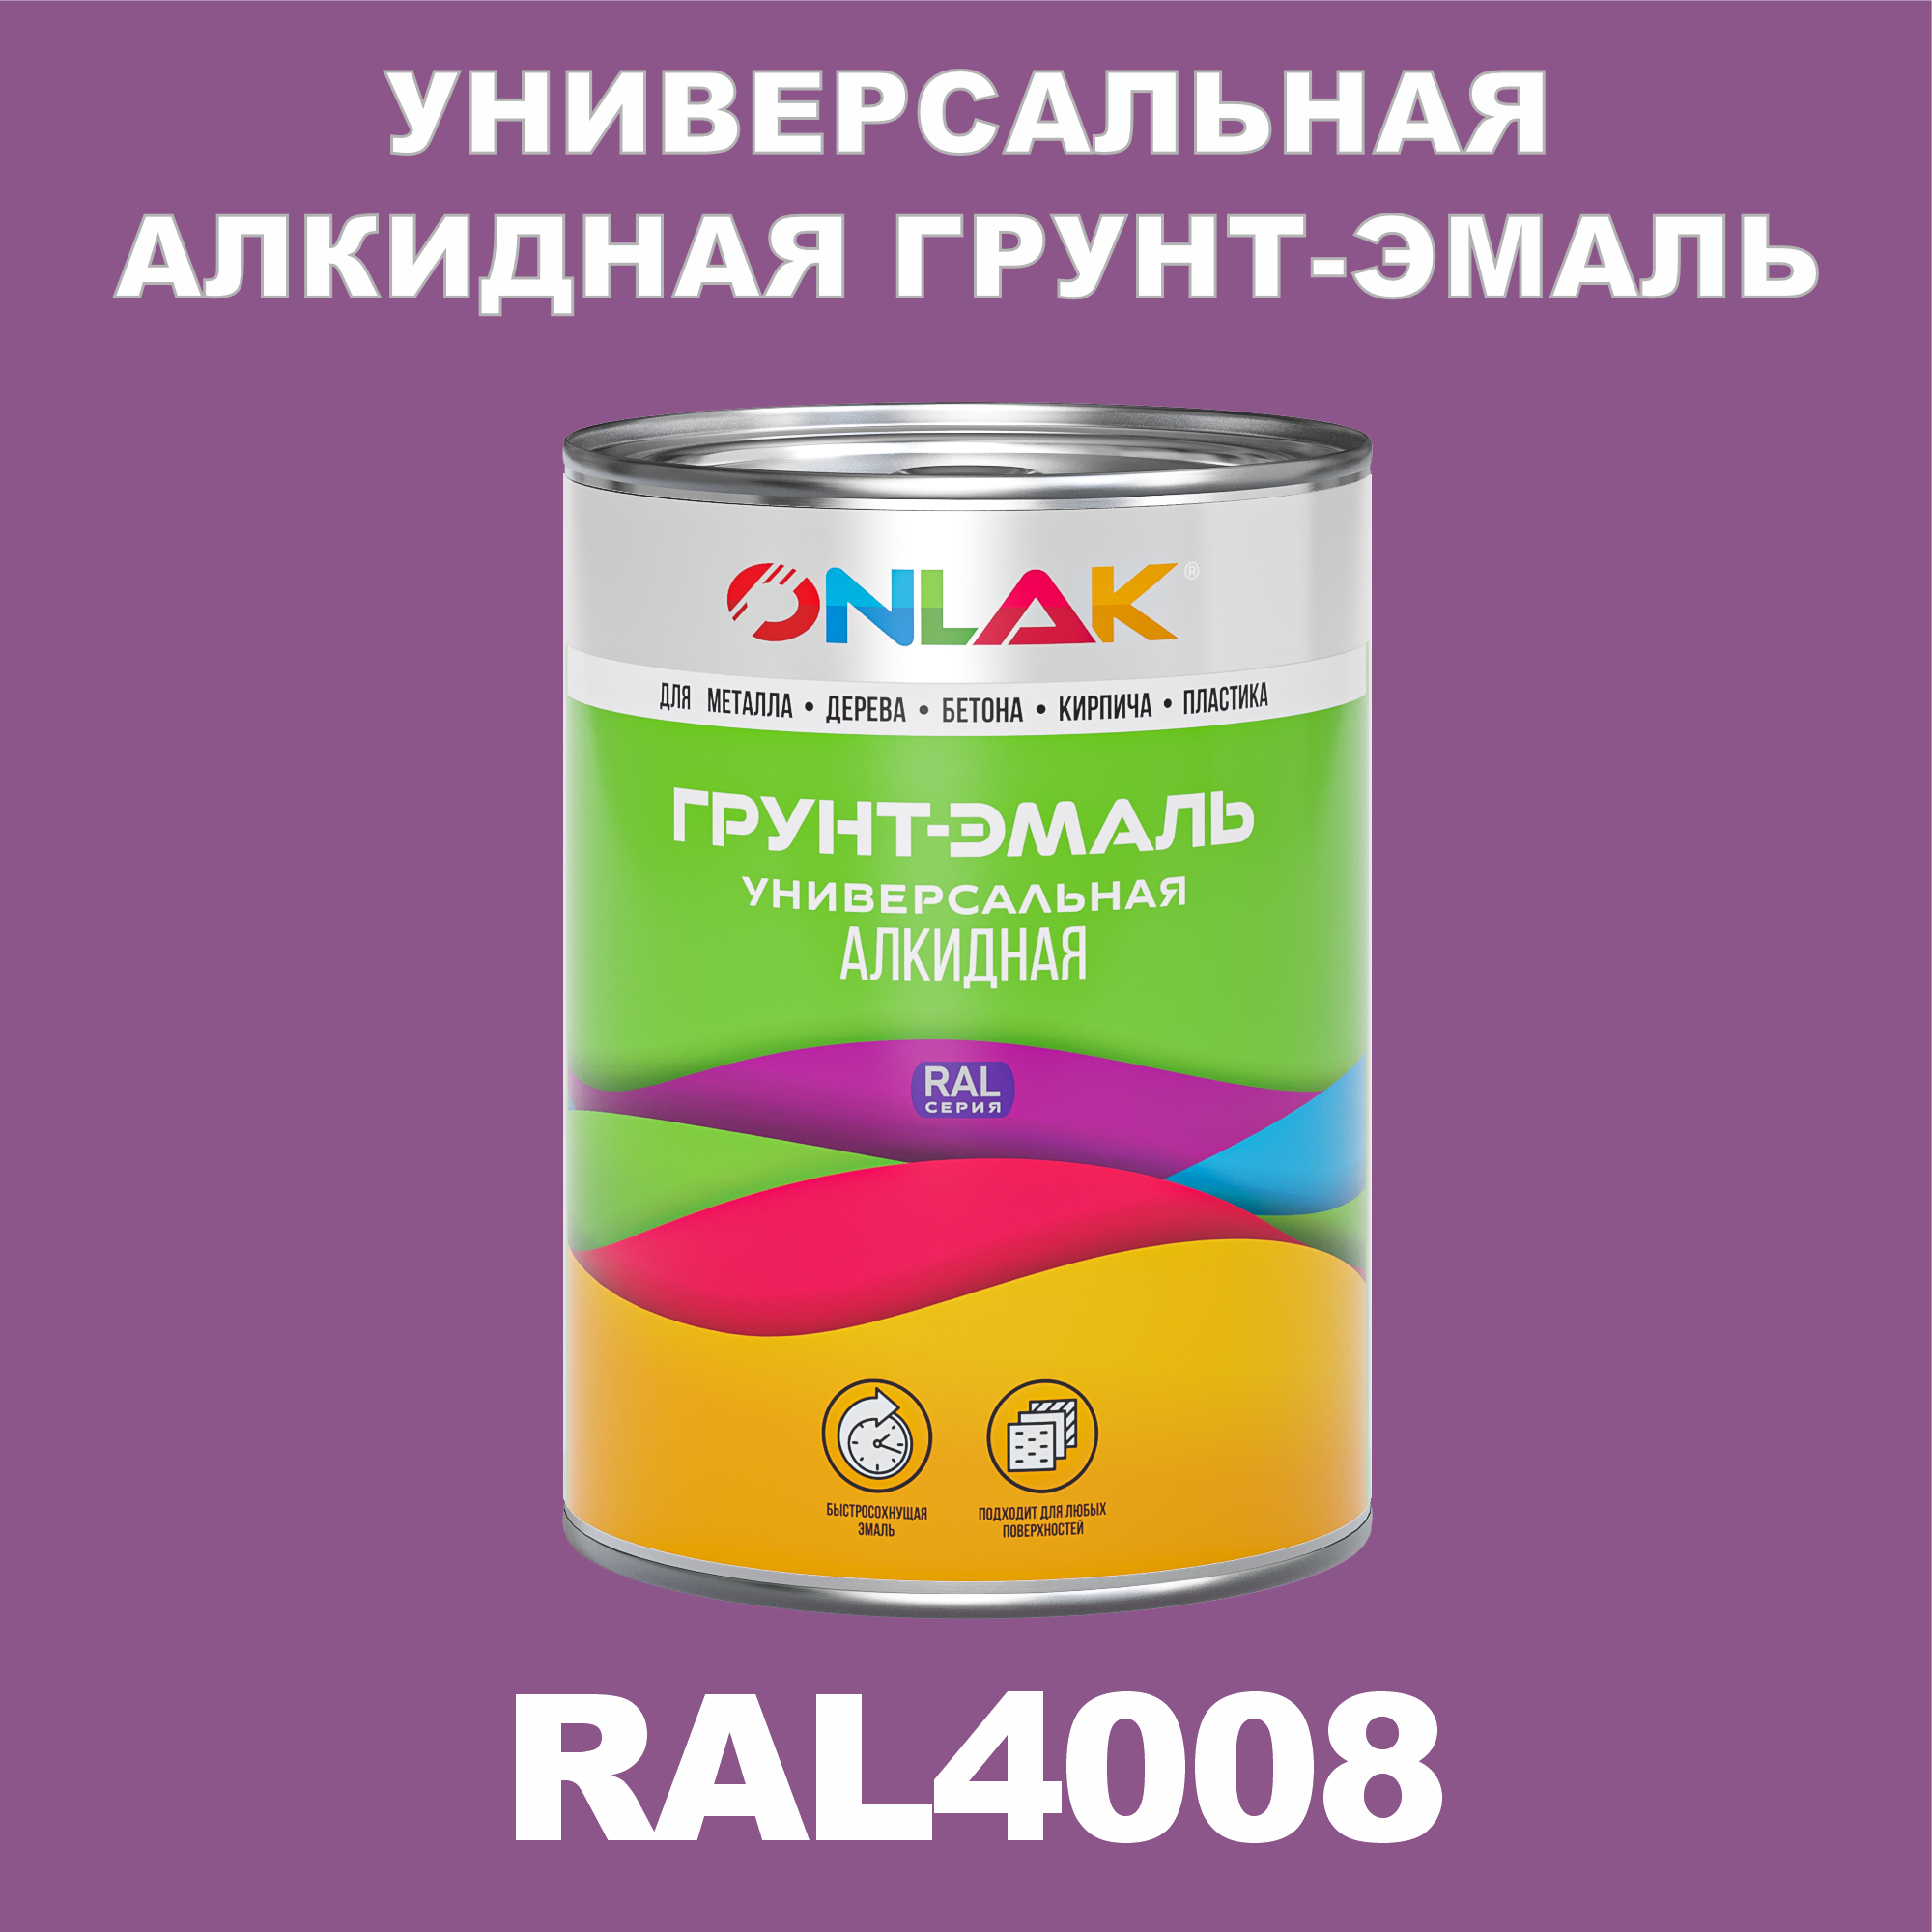 Грунт-эмаль ONLAK 1К RAL4008 антикоррозионная алкидная по металлу по ржавчине 1 кг